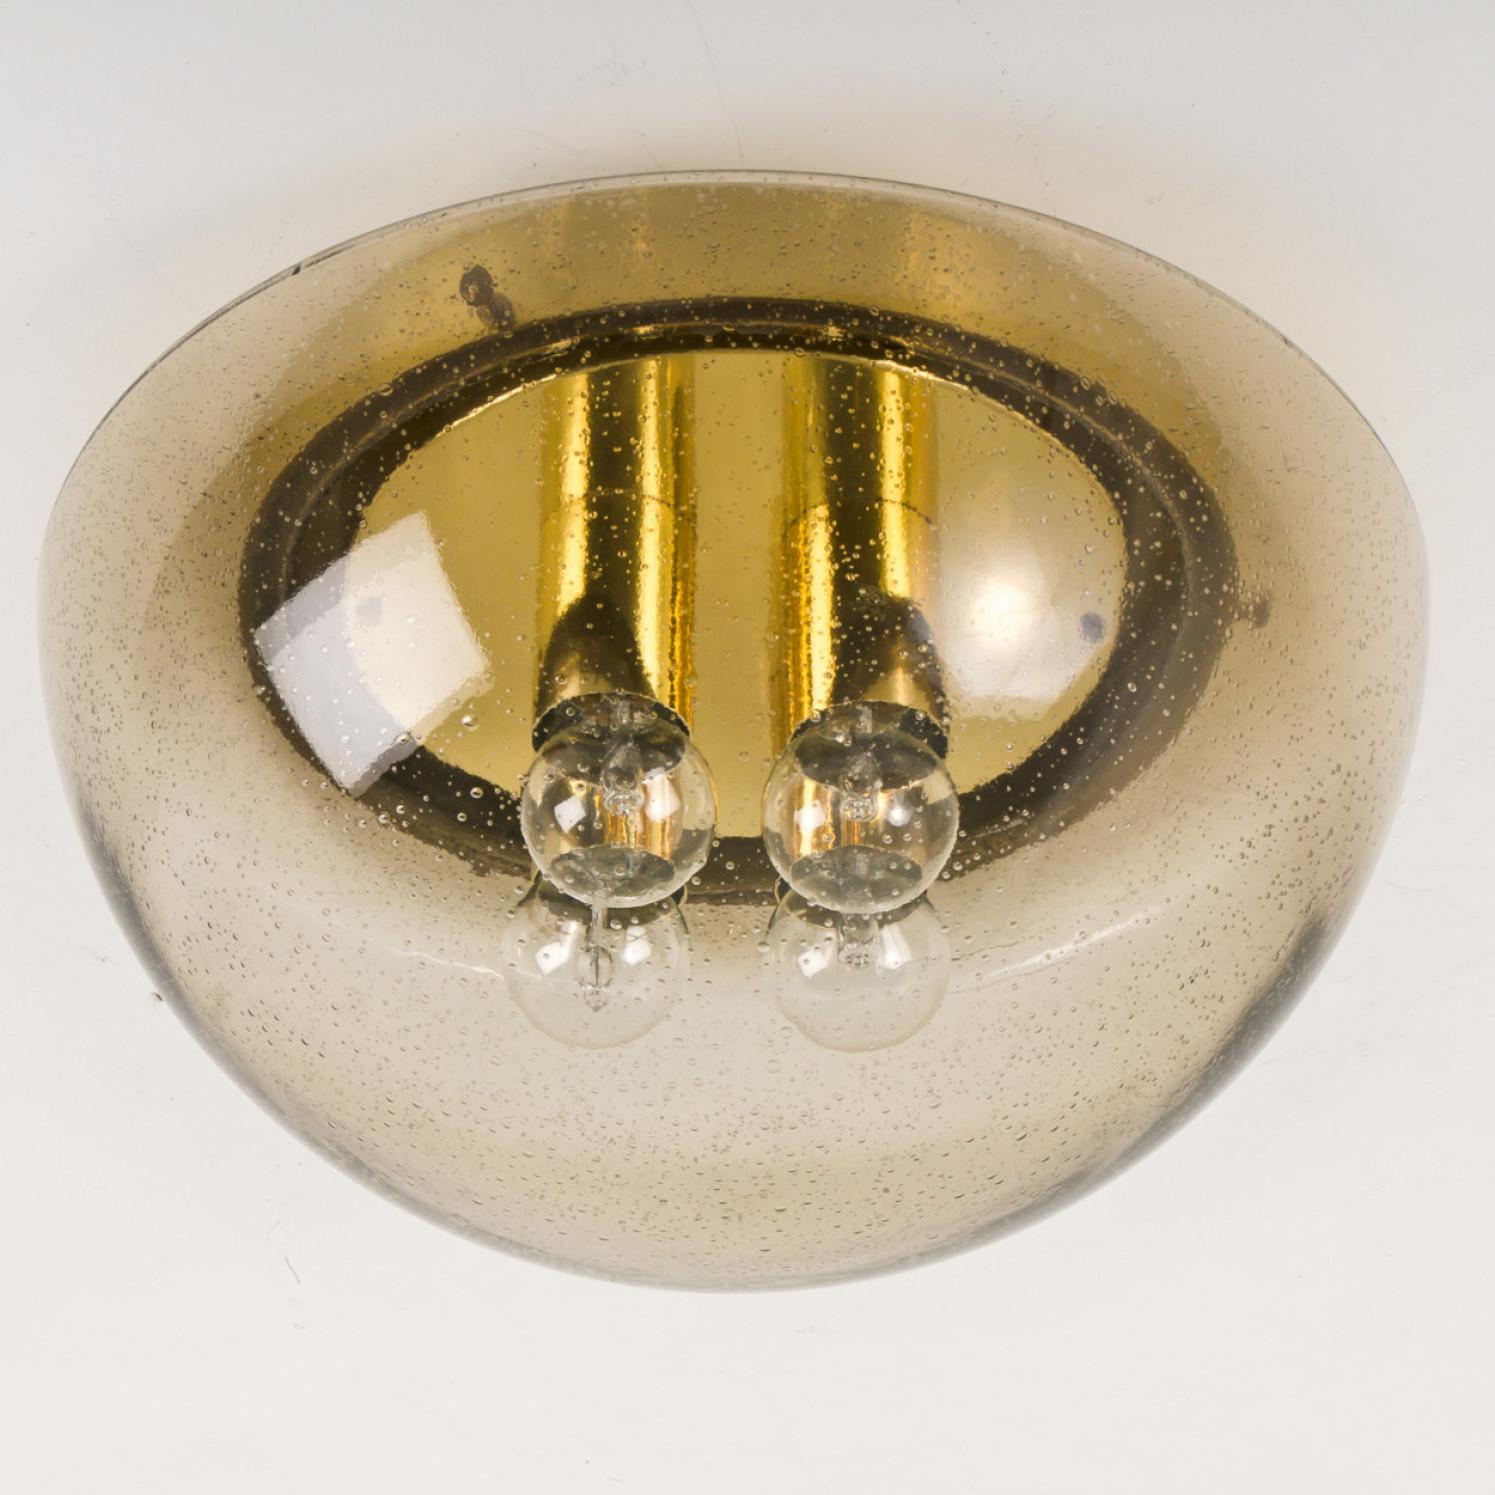 Eine wunderbare pilzförmige Unterputzdose, hergestellt von Glashütte Limburg, um 1970 in Deutschland, Europa.
Mit mundgeblasenem Rauchglas auf einer Messingbasis. Leuchtet wunderschön.

Abmessungen: Höhe ca. 20 cm, Durchmesser ca. 50 cm.

Sehr guter